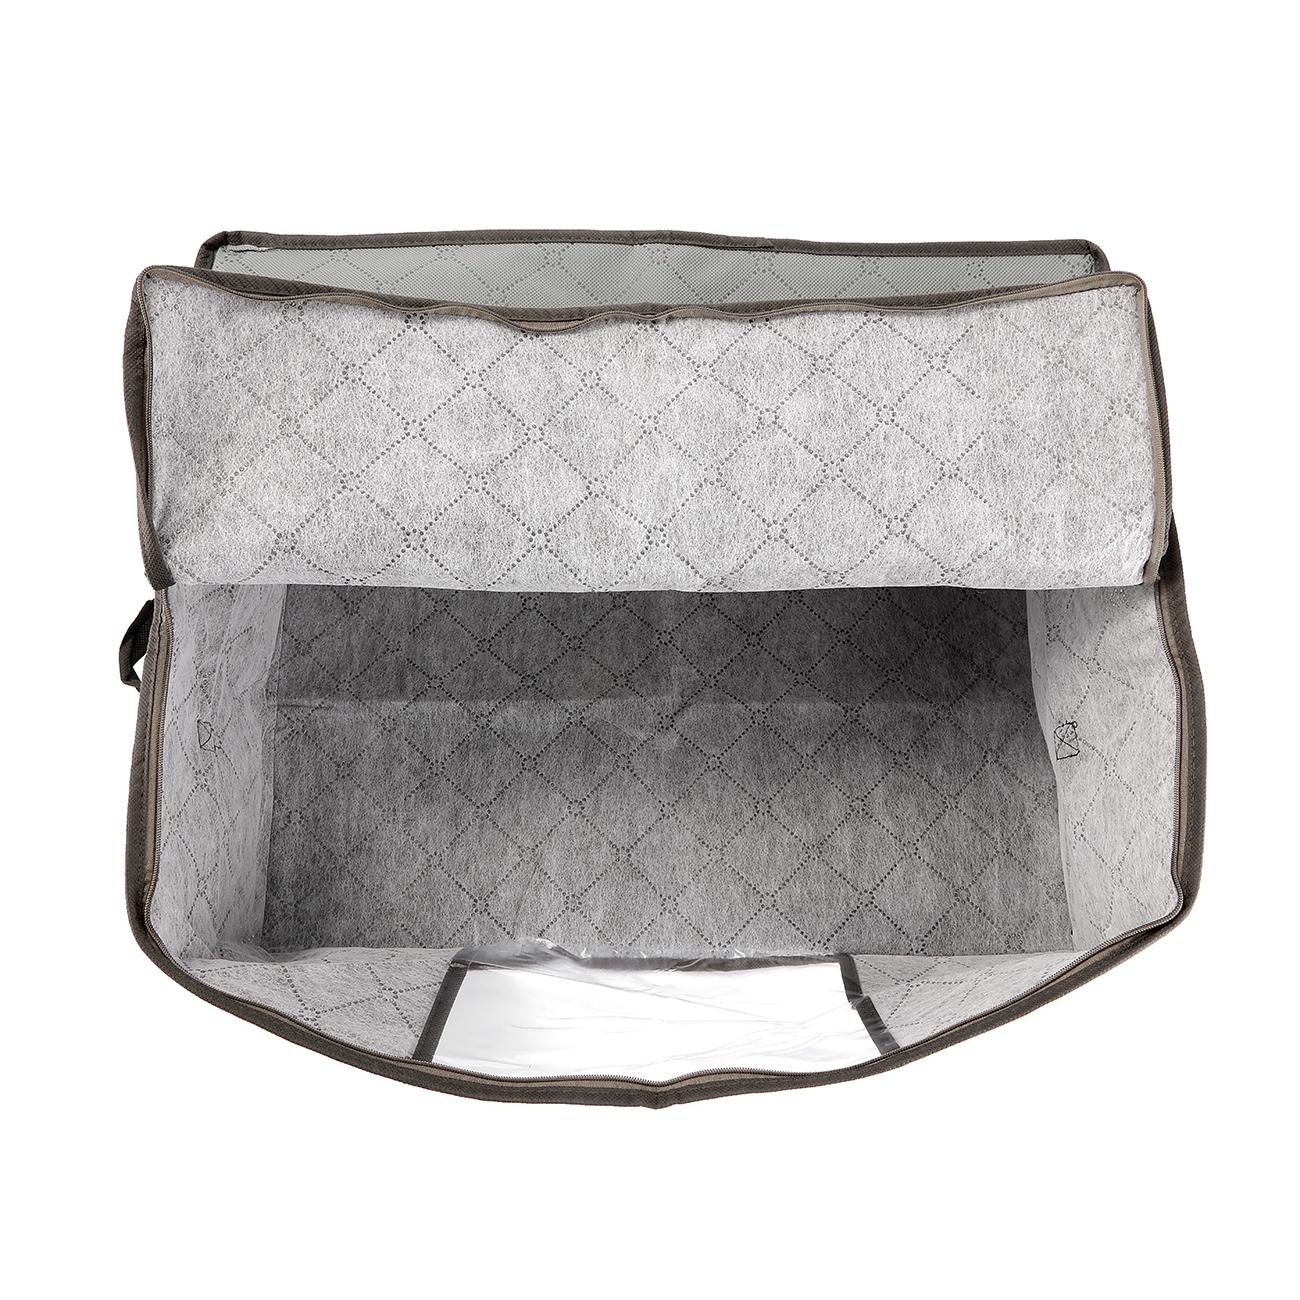 49 x 36 x 21cm 3 stk foldbare opbevaringsposer tøjarrangøræske tæppe quiltetrøje lynlås ikke-vævet foldeskab organisere